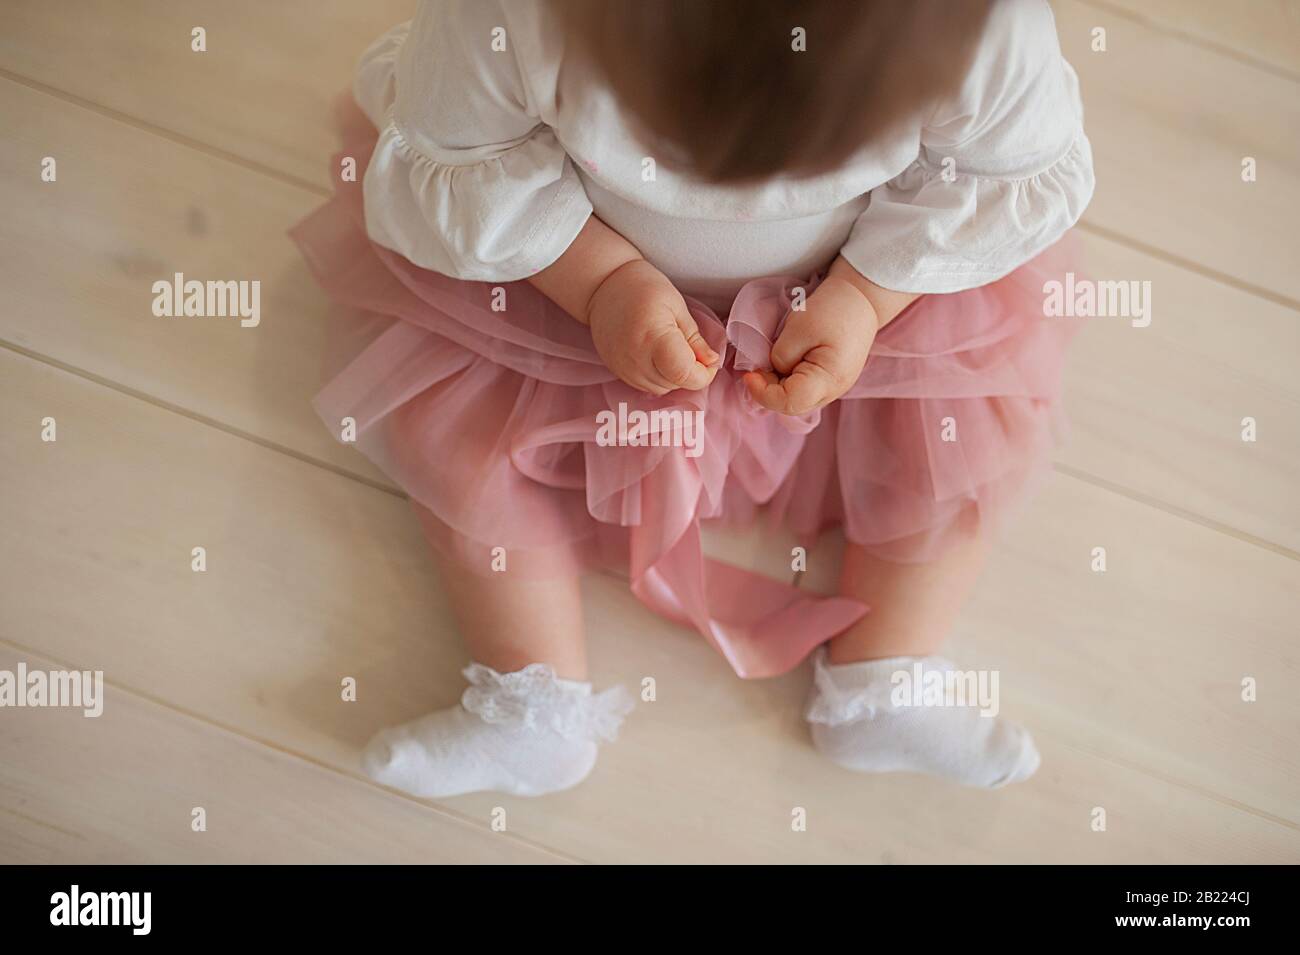 une fillette dans une jupe en tulipe rose poussiéreuse, des chaussettes en dentelle blanche, aux bras gonflés, se trouve sur un sol en bois de couleur claire Banque D'Images